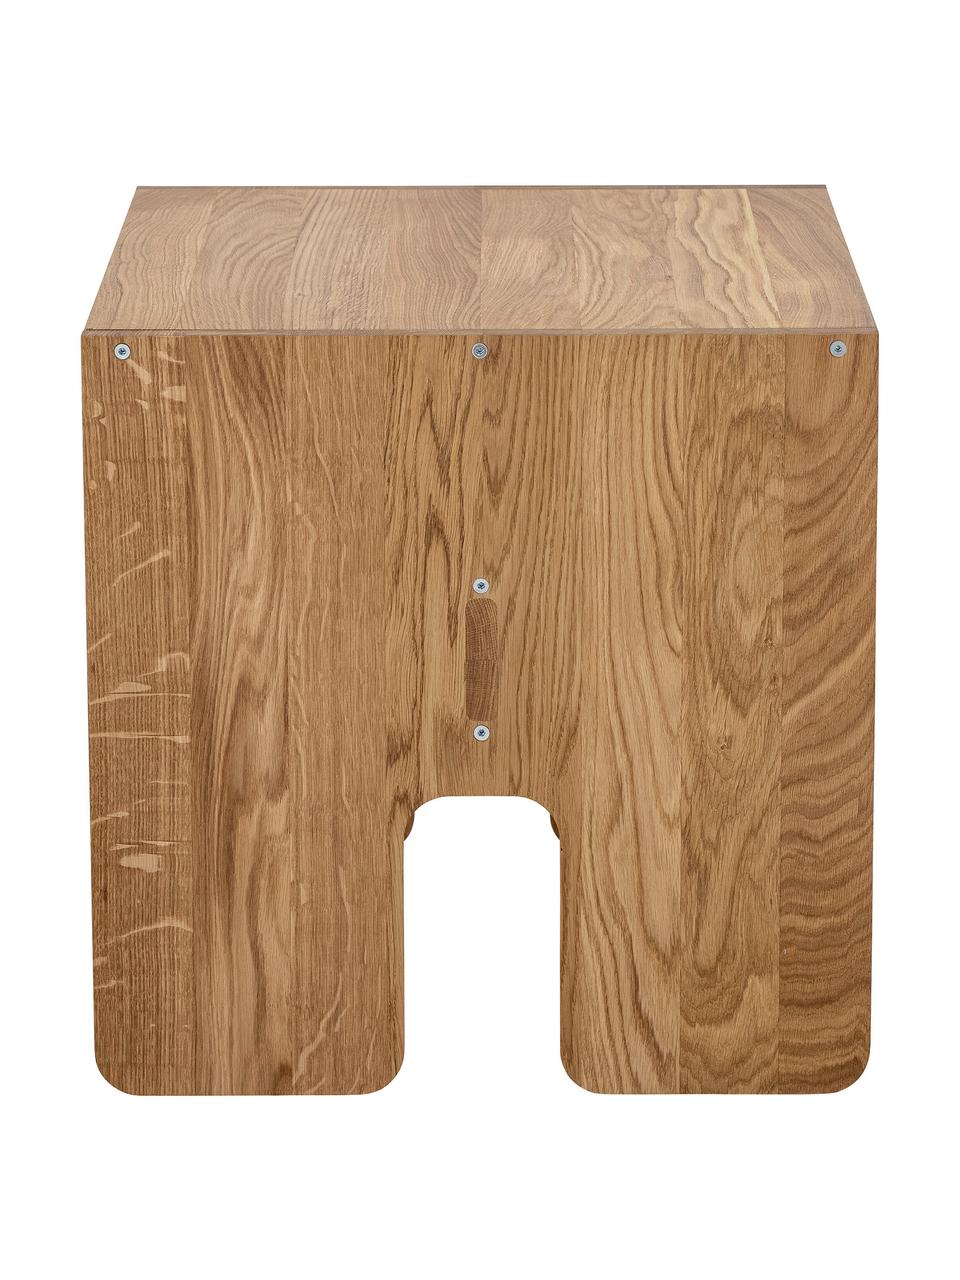 Stolik dziecięcy z drewna dębowego Bas, Drewno dębowe, Drewno dębowe, S 60 x G 50 cm